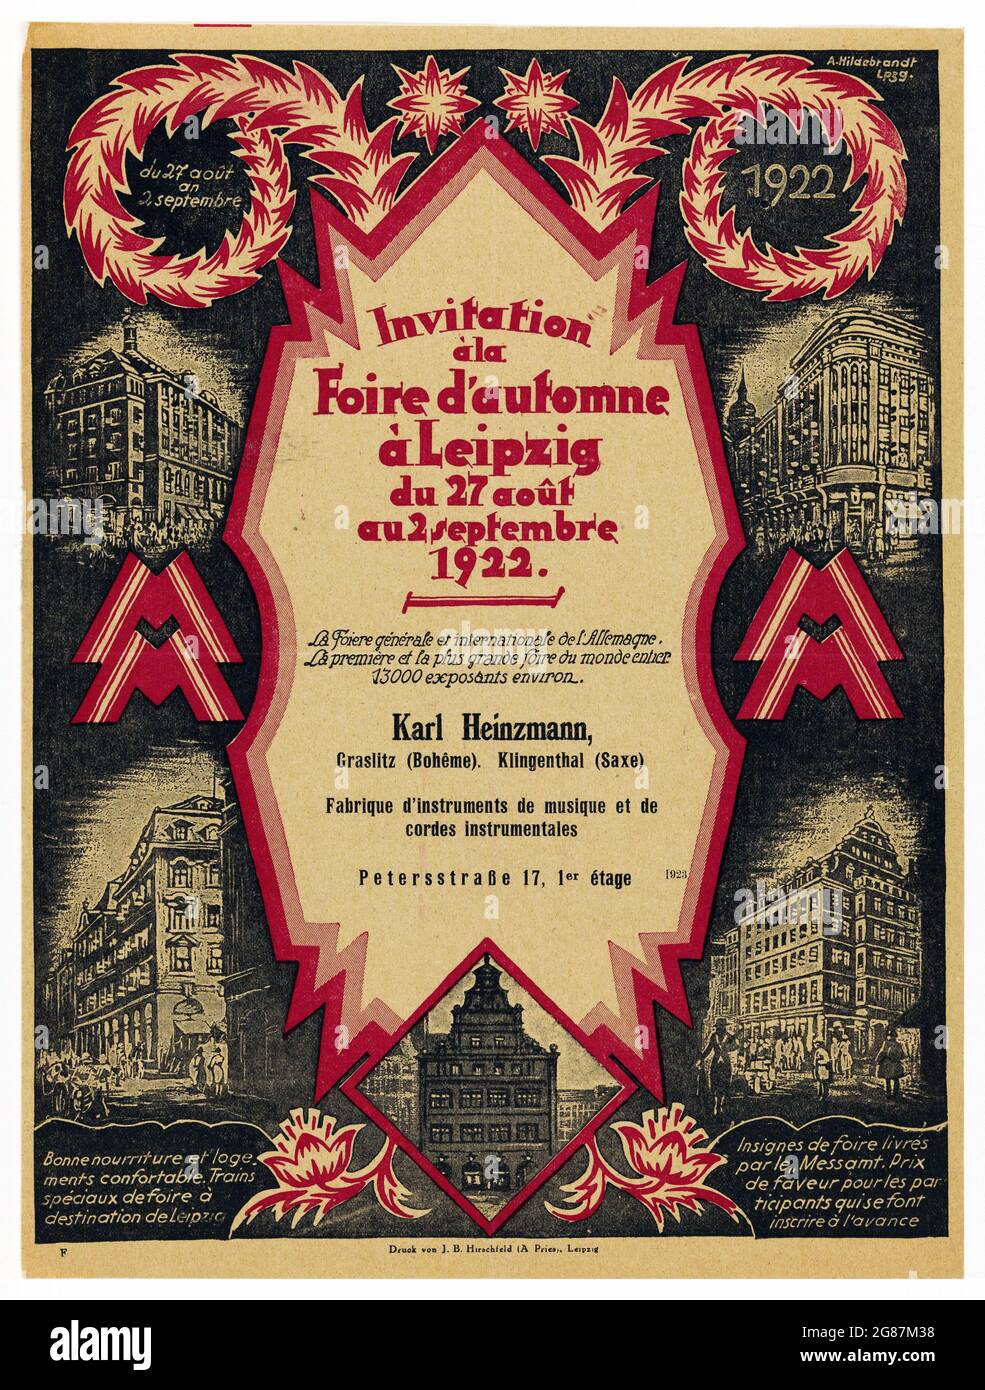 Uitnodiging van instrumentenmaker Karl Heinzmann voor de voorjaarsmarkt in Leipzig invitation a la Foire d'automne. 1922. Alte Einladung. Stockfoto